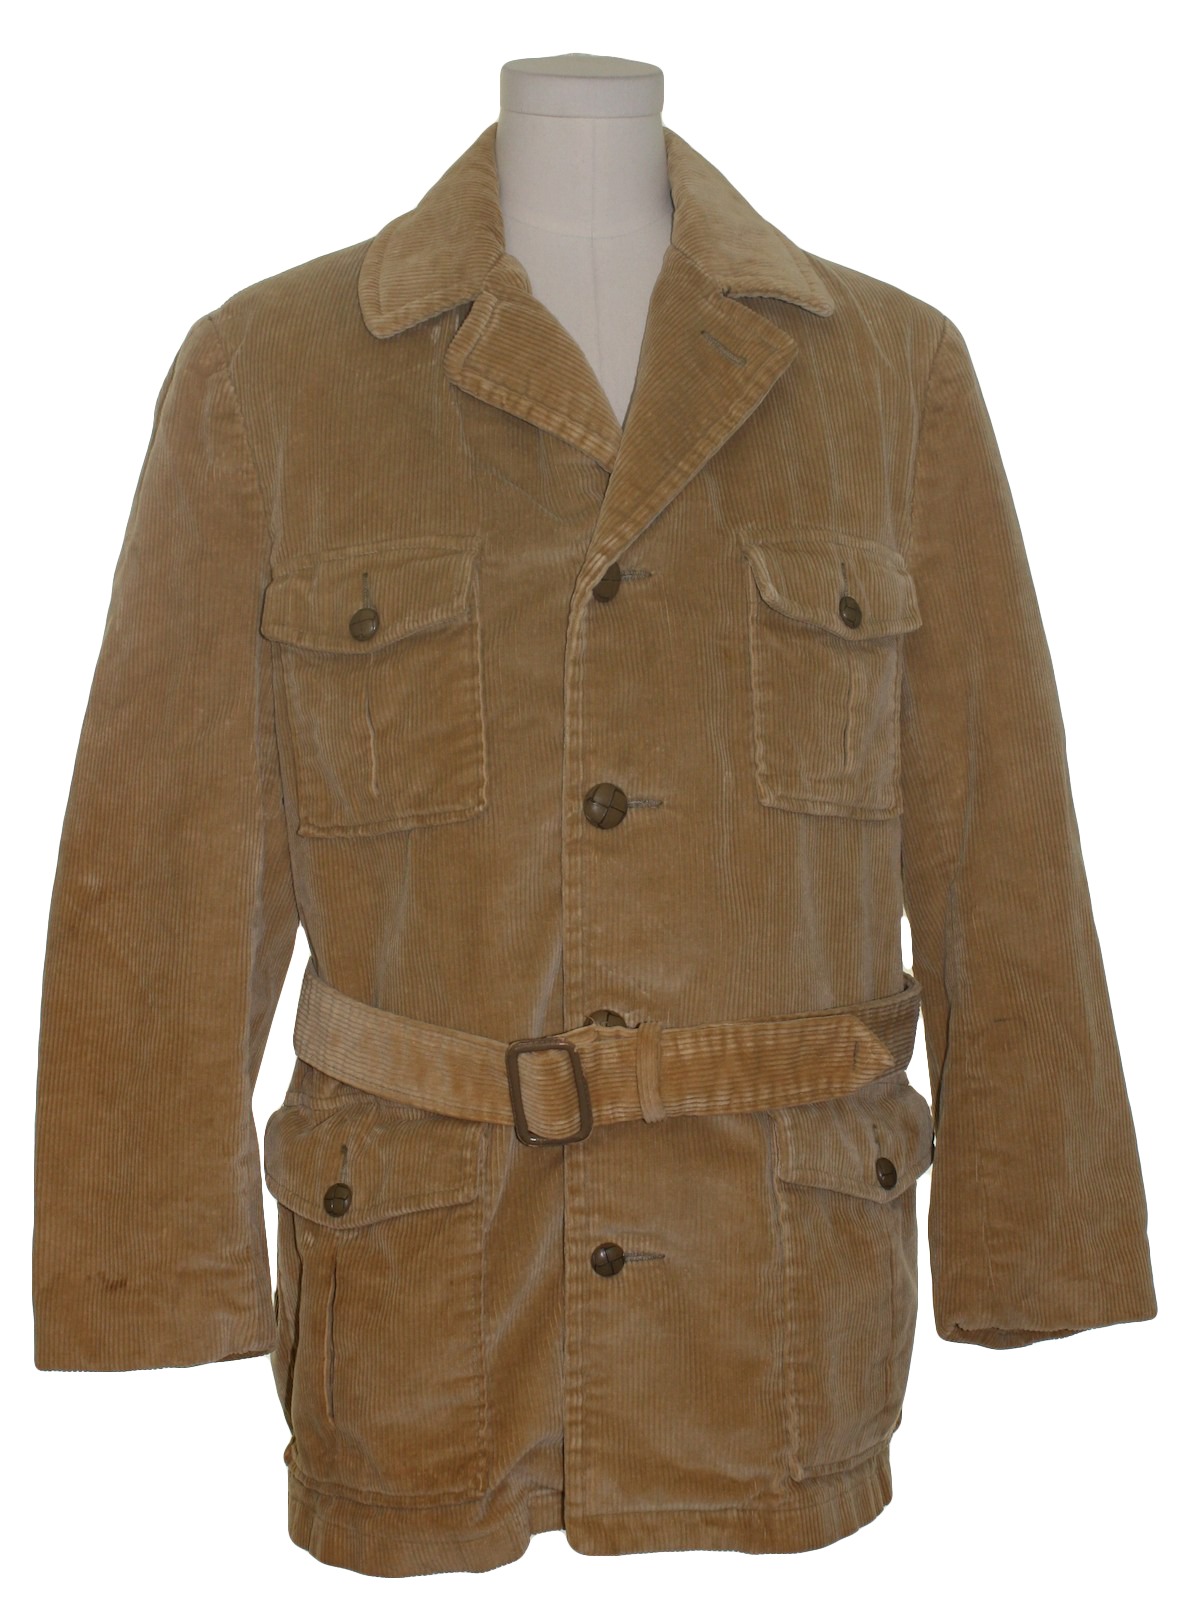 Sears Oakbrook 70's Vintage Jacket: 70s -Sears Oakbrook- Mens tan ...